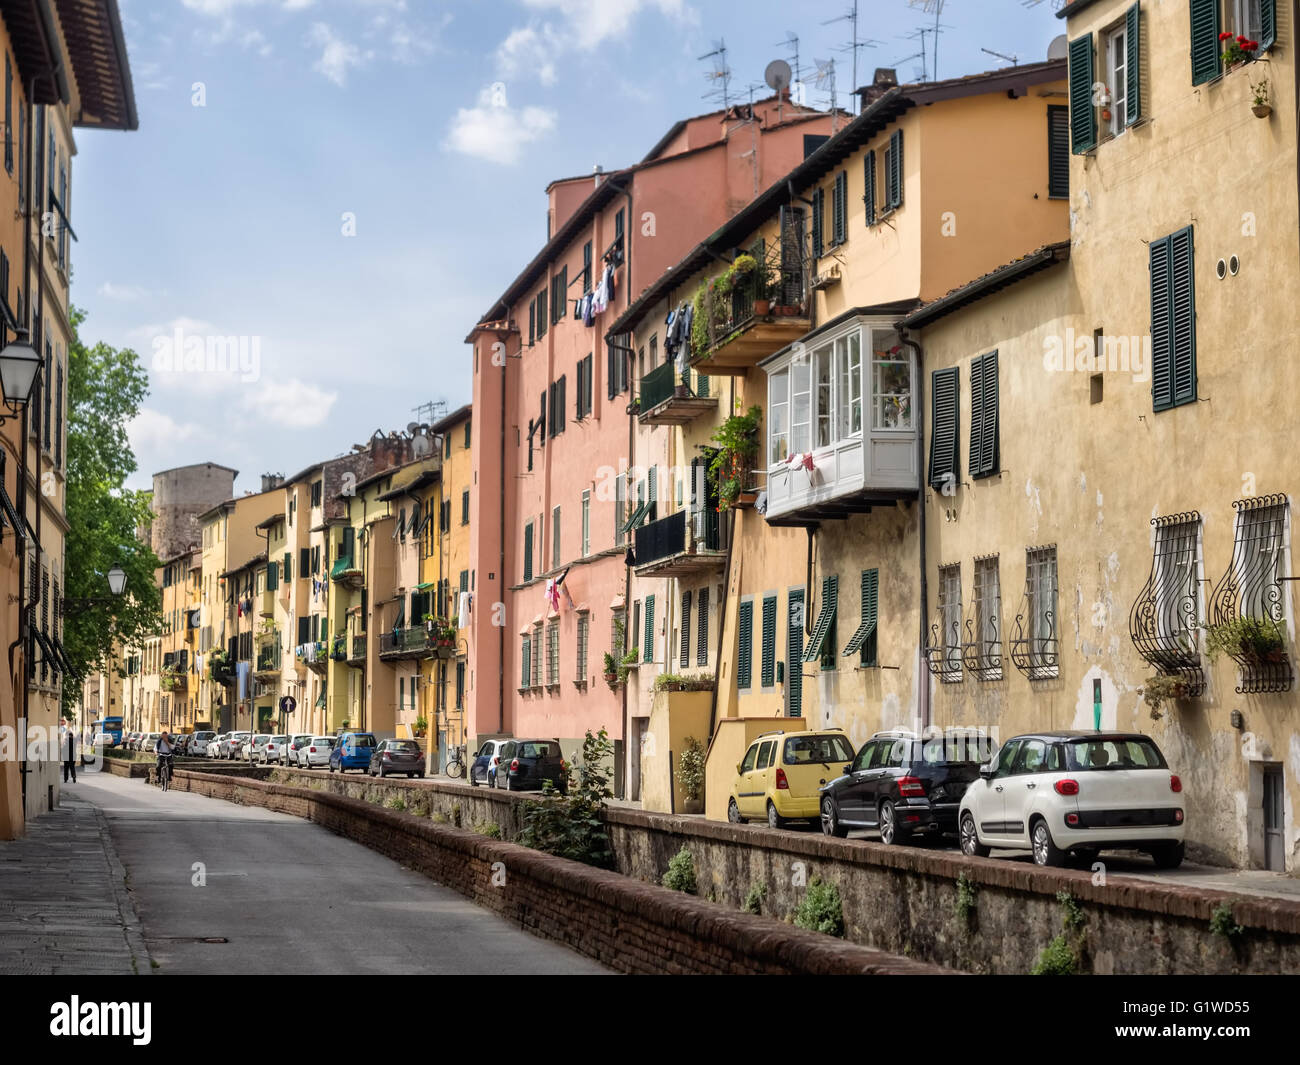 Via del Fosso mit Kanälen in Lucca, Italien Stockfoto